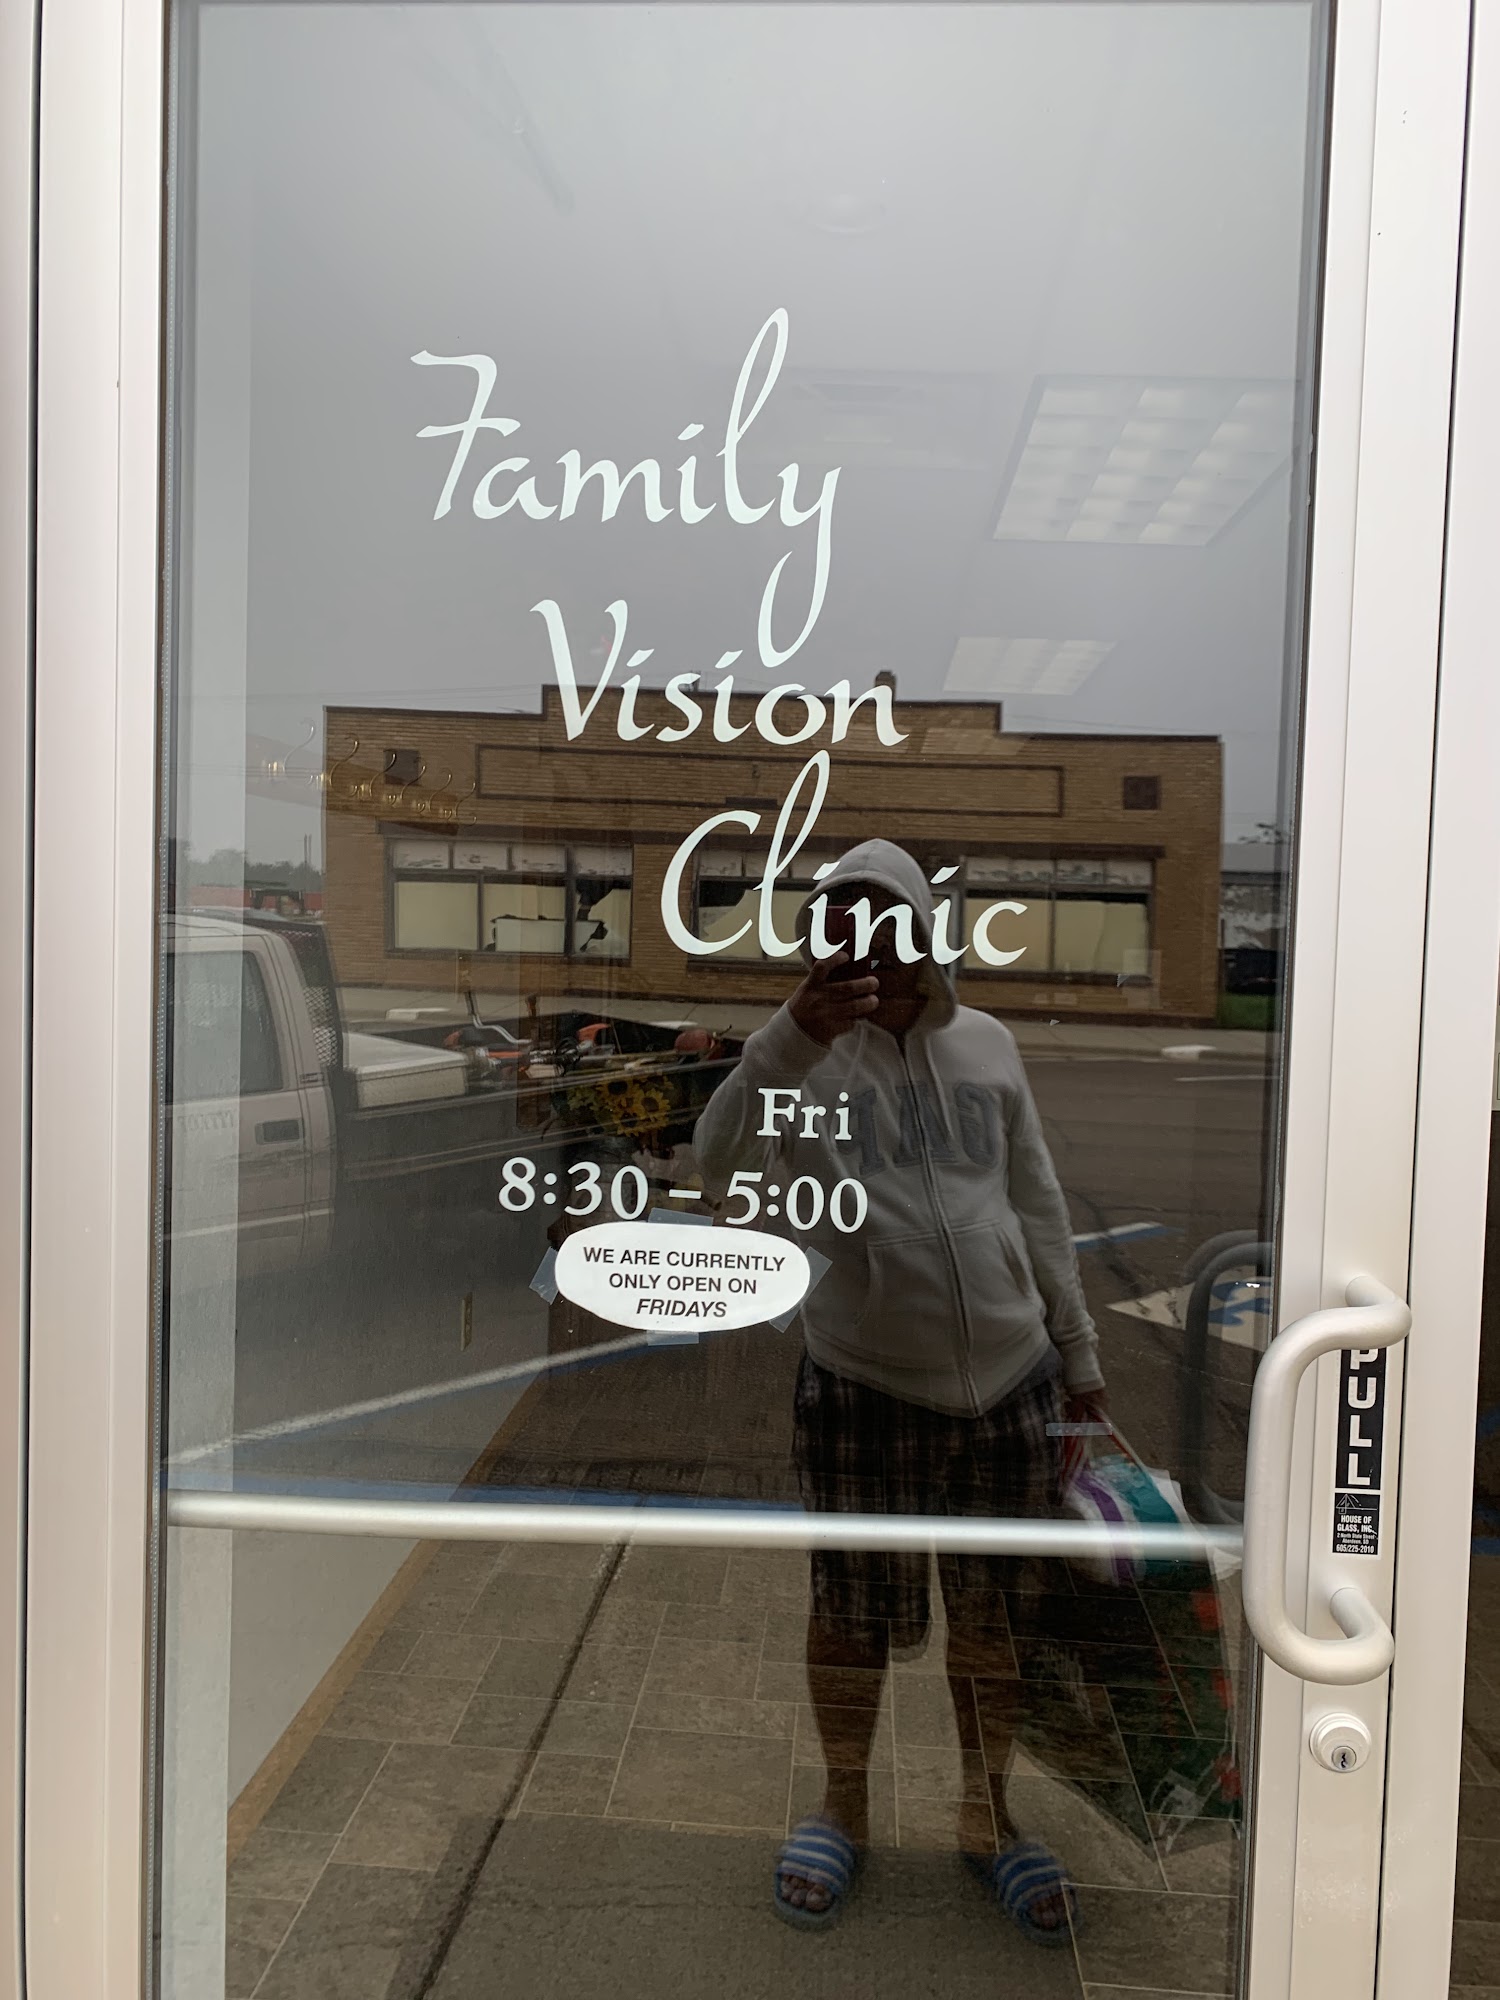 Family Vision Clinic 110 N Main St N, Elgin North Dakota 58533